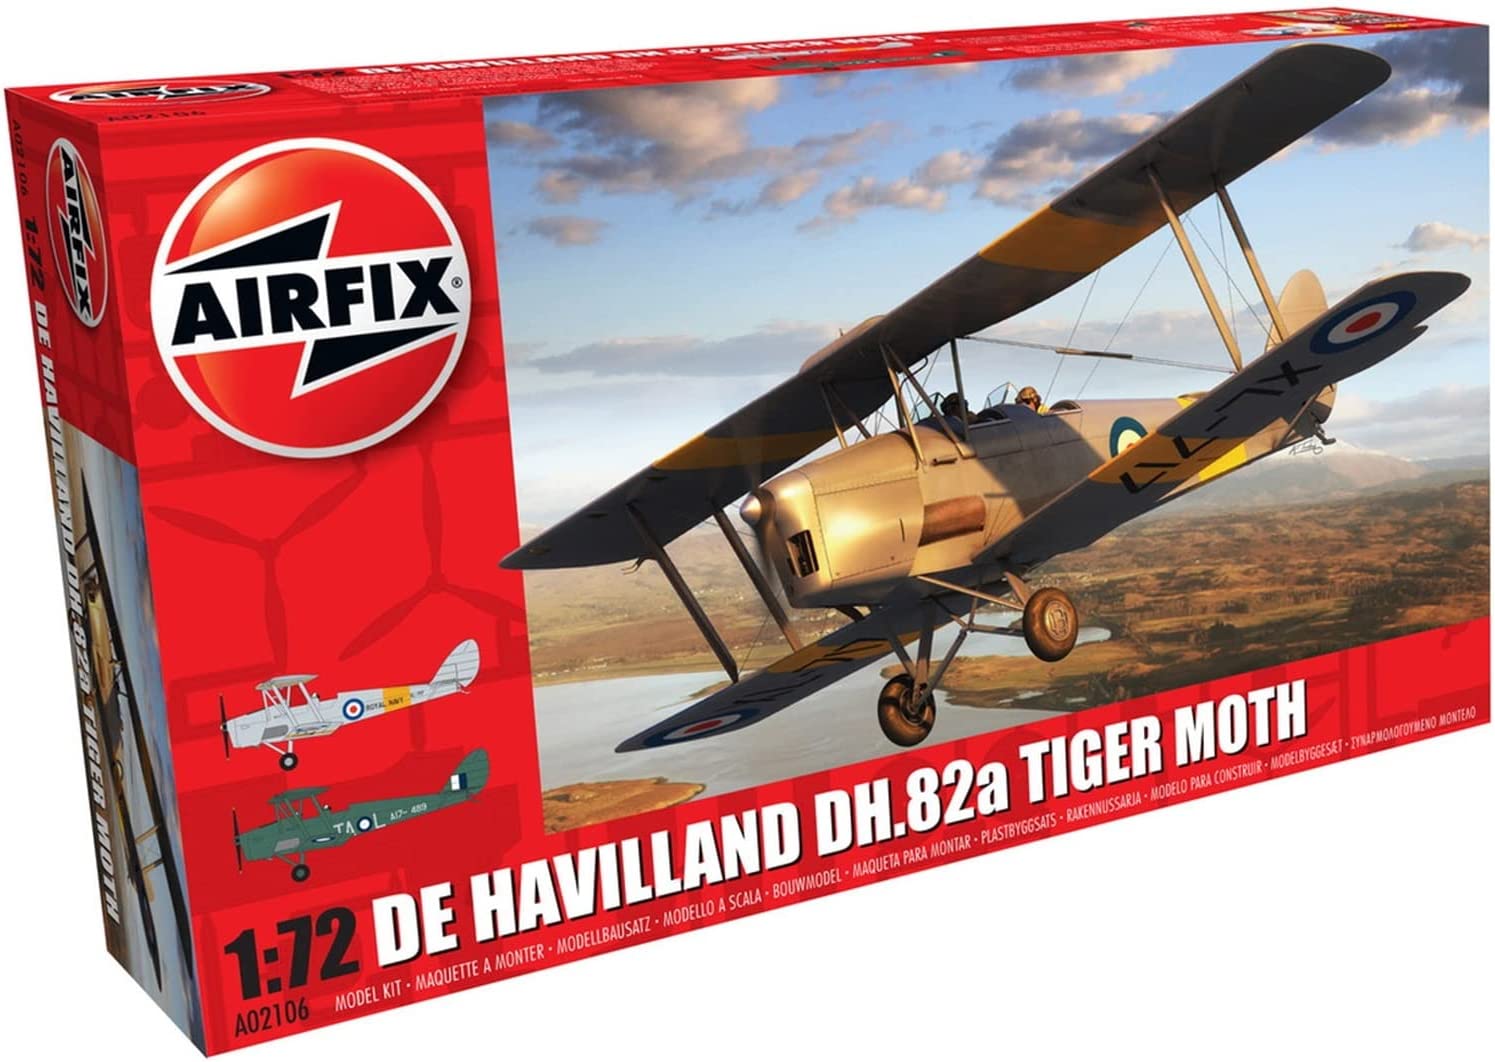 Airfix A02106 de haviland dh.82a tiger moth 1:72